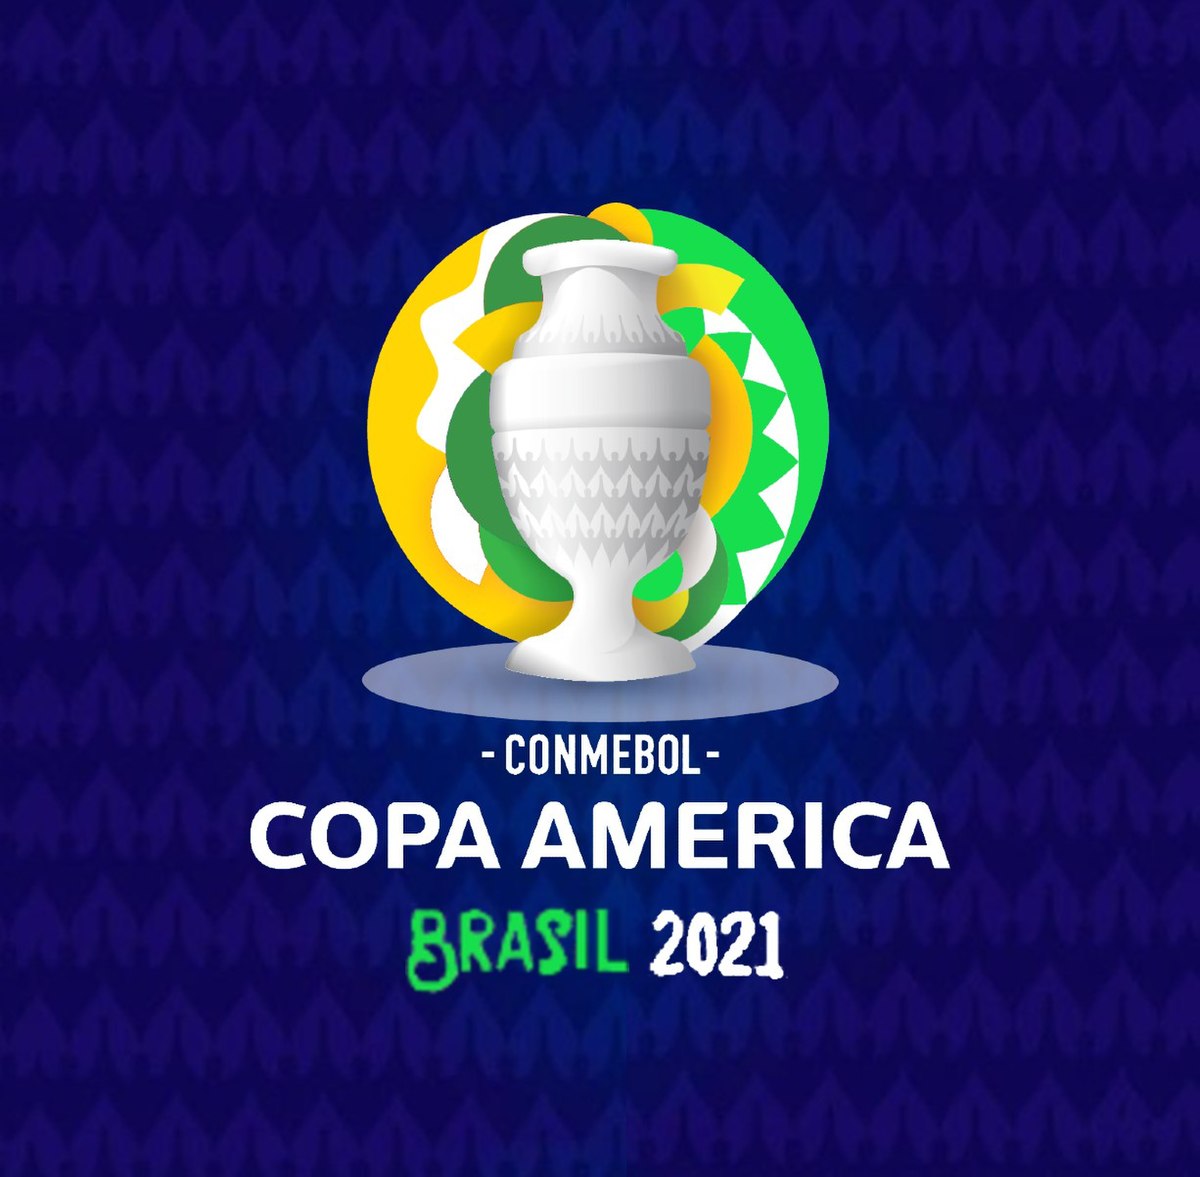 كوپا أميركا 2021: البرنامج الكامل للمباريات